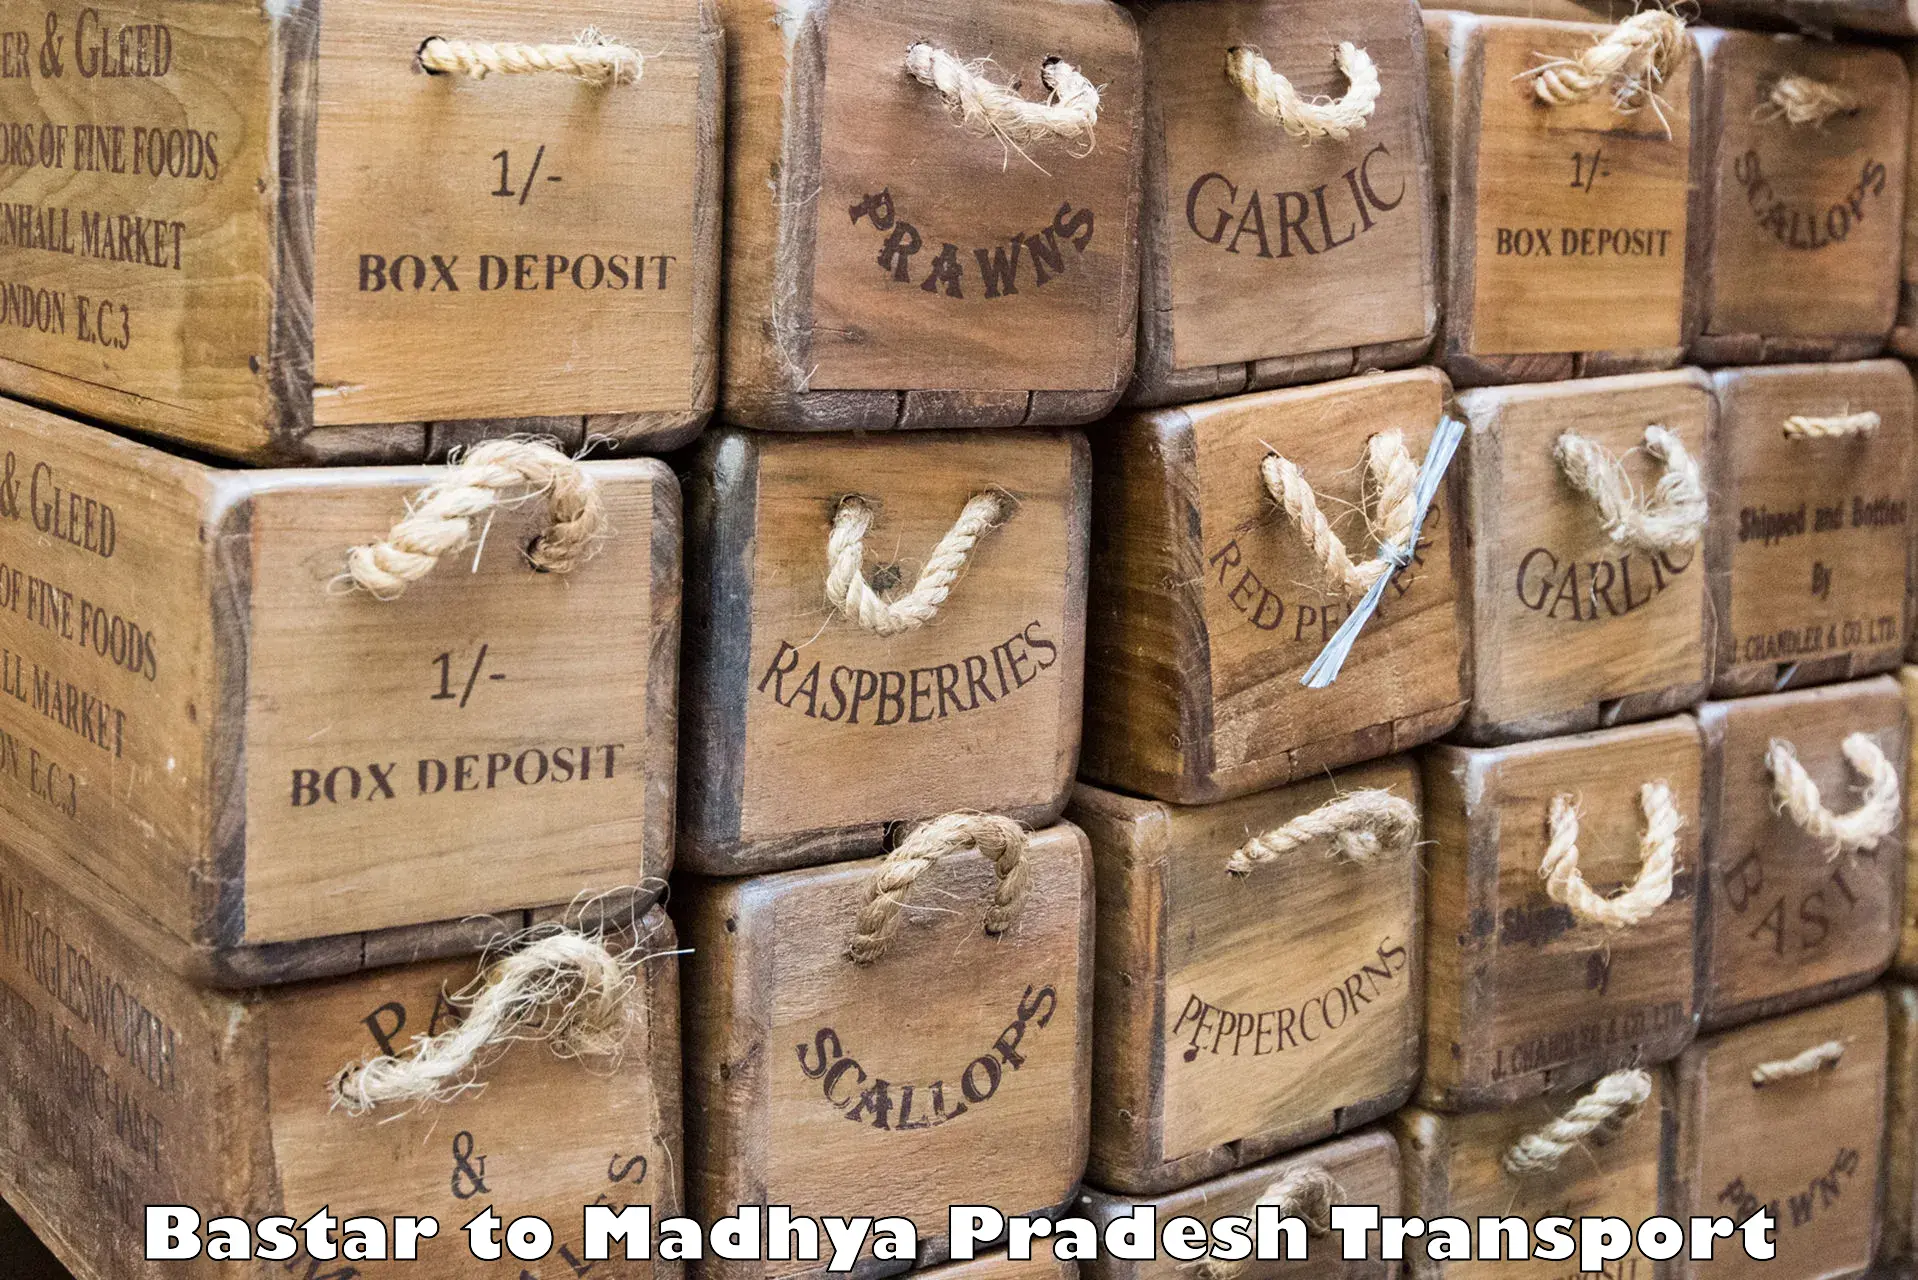 Commercial transport service Bastar to Narsinghgarh